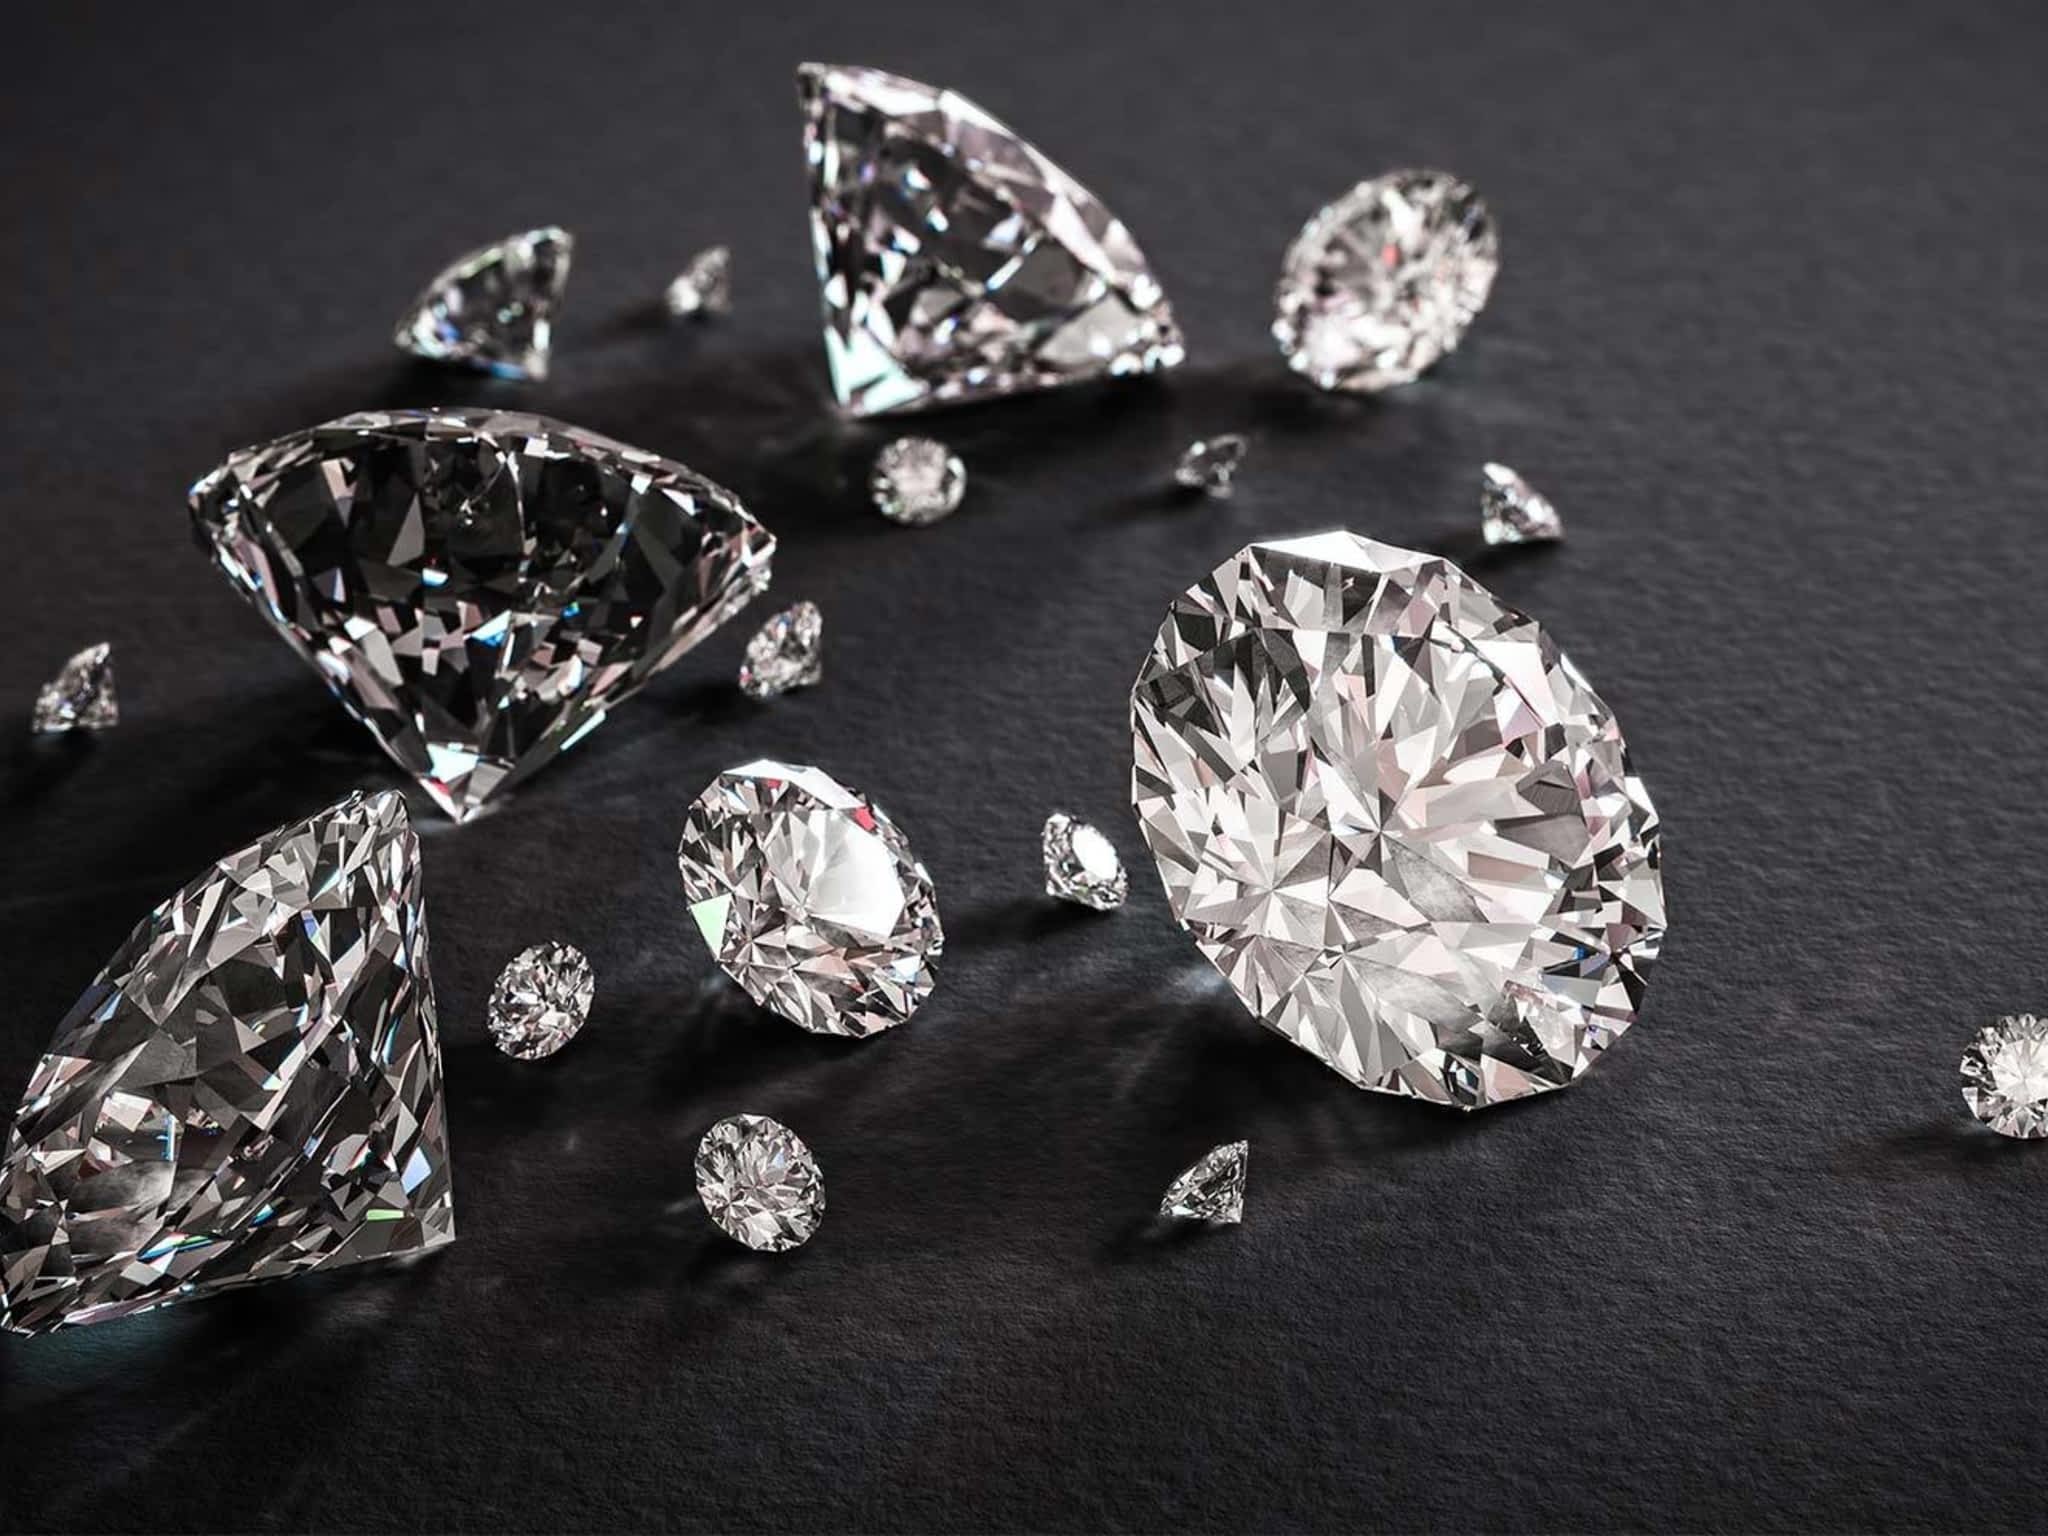 С цветными бриллиантами first class diamonds. Красивые бриллианты. Бриллианты Эстетика. Ювелирные украшения.